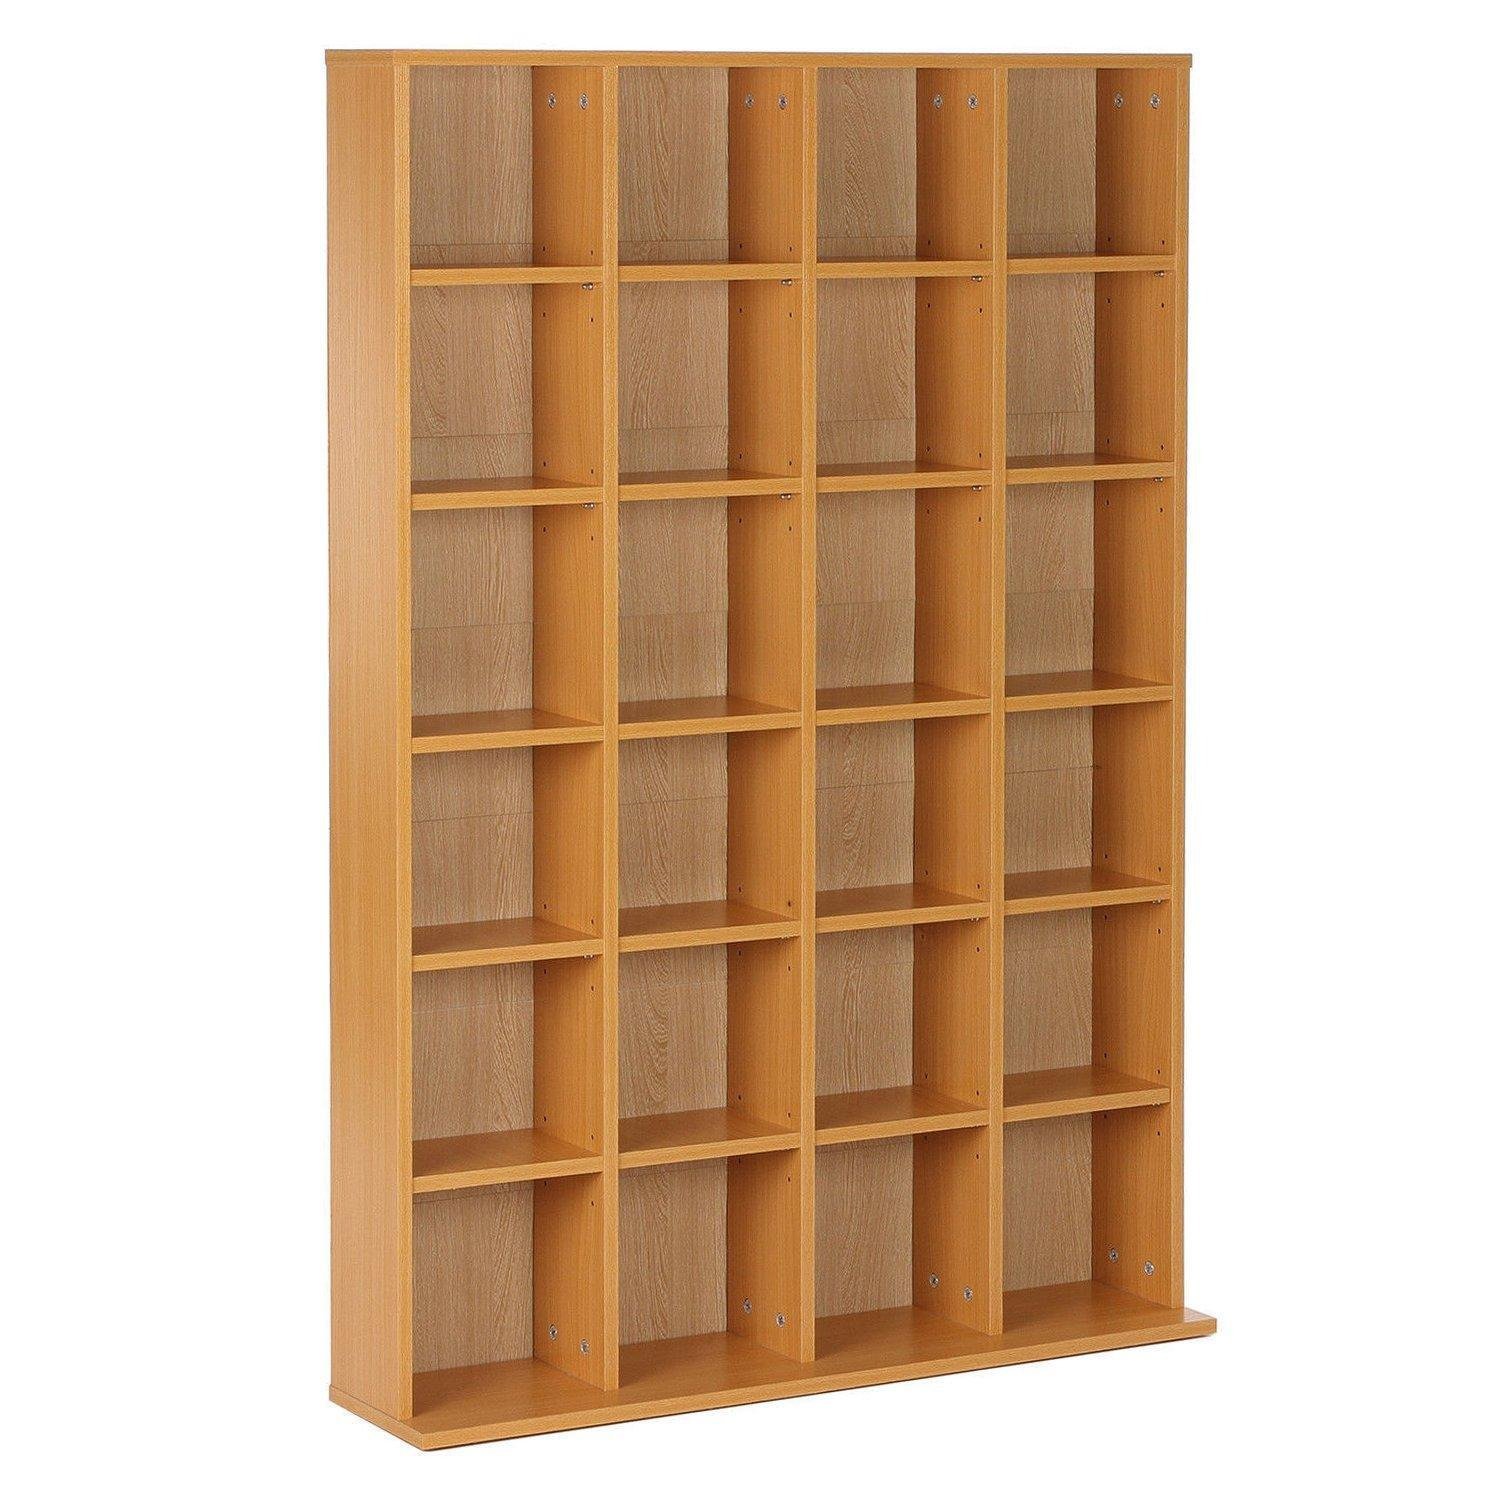 Media Storage Shelf Rack Unit Video Wood Bookcase - image 1